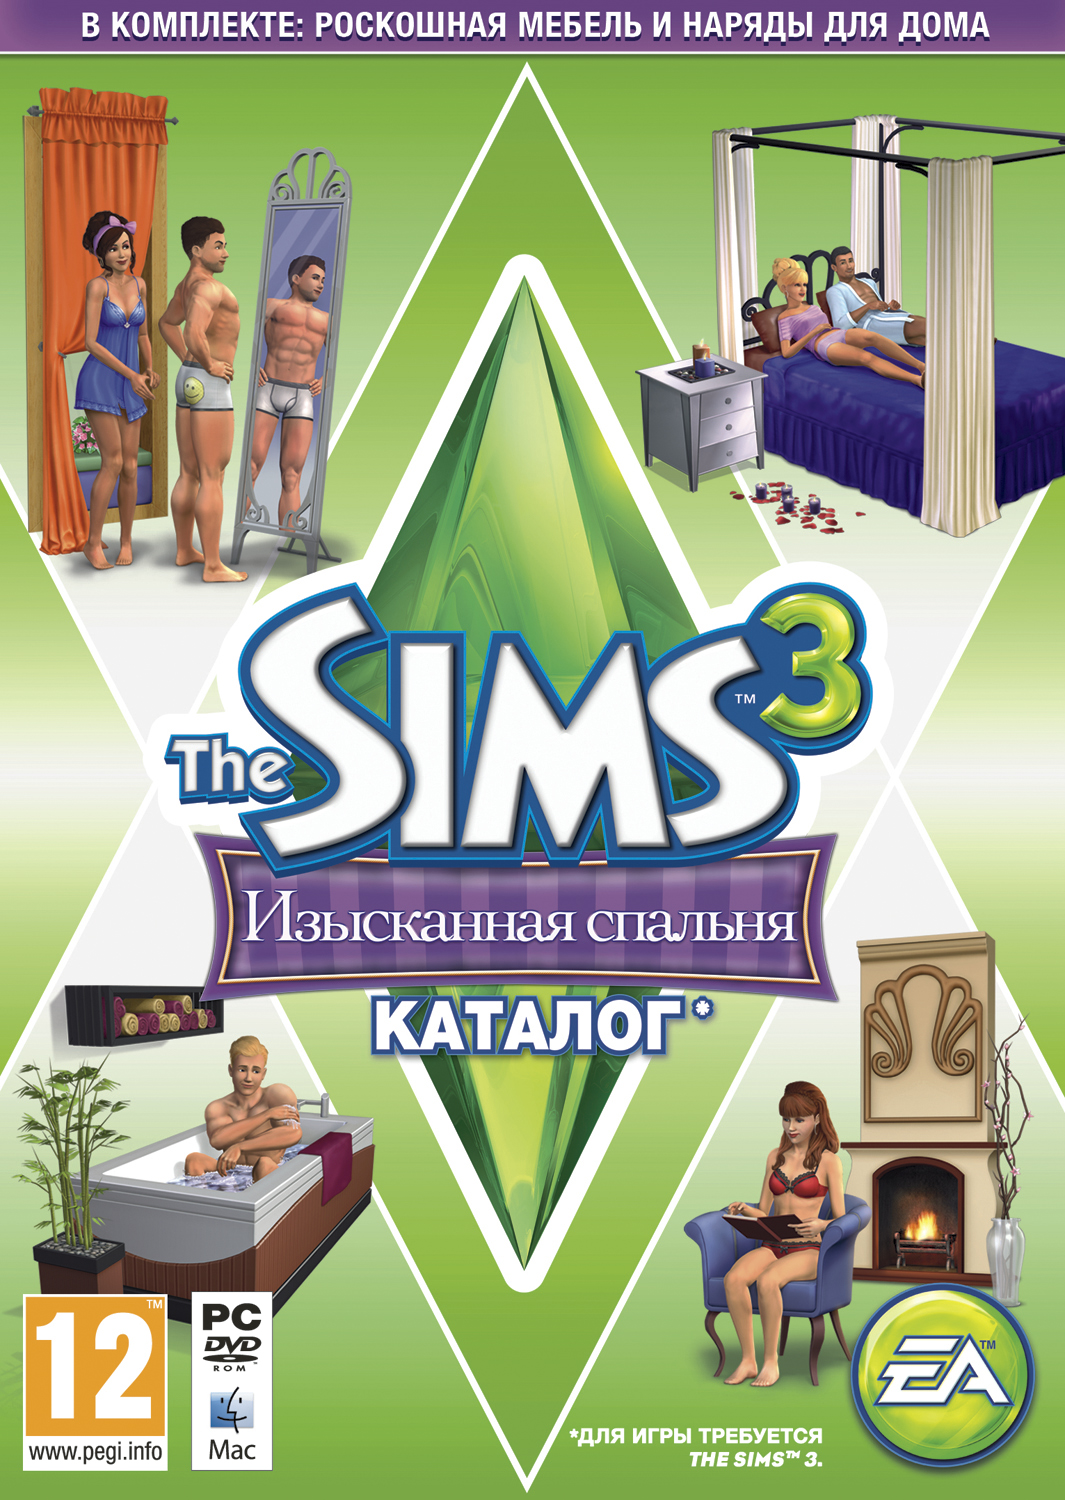 Sims 3 или Sims 4 — какая игра лучше?